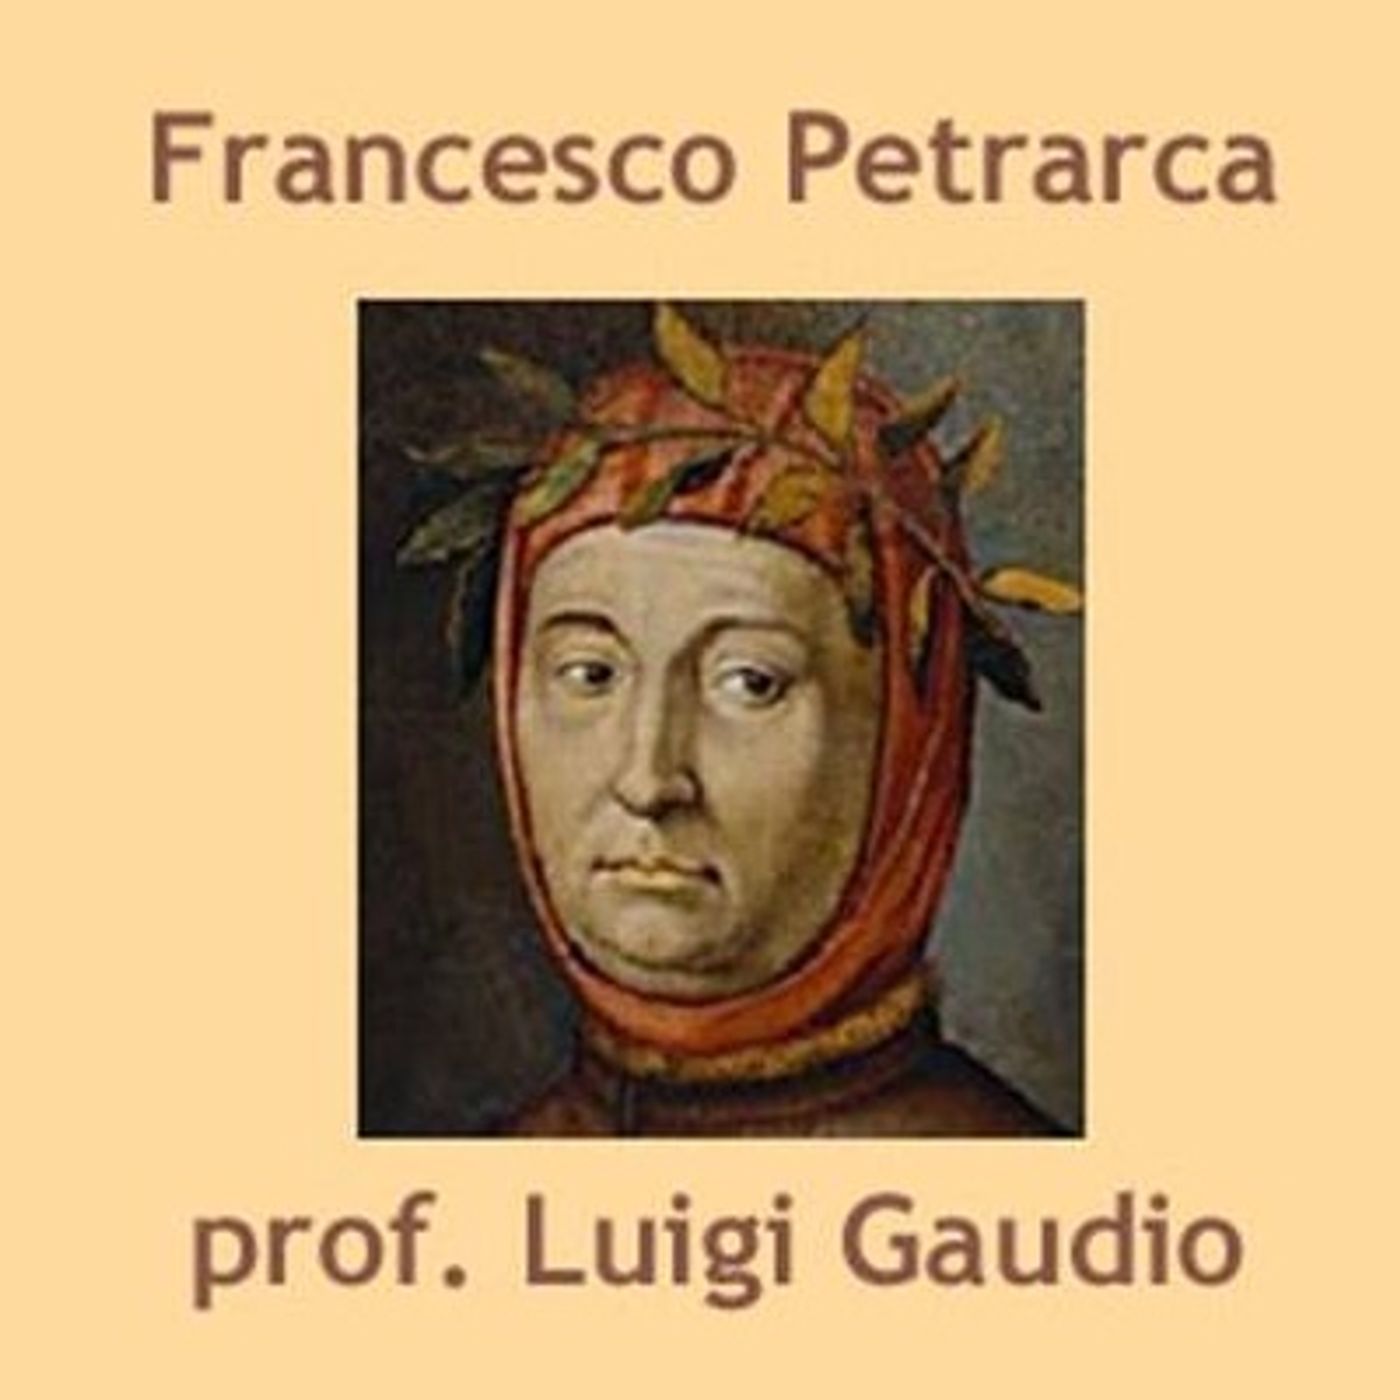 Di pensier in pensier di monte in monte di Francesco Petrarca